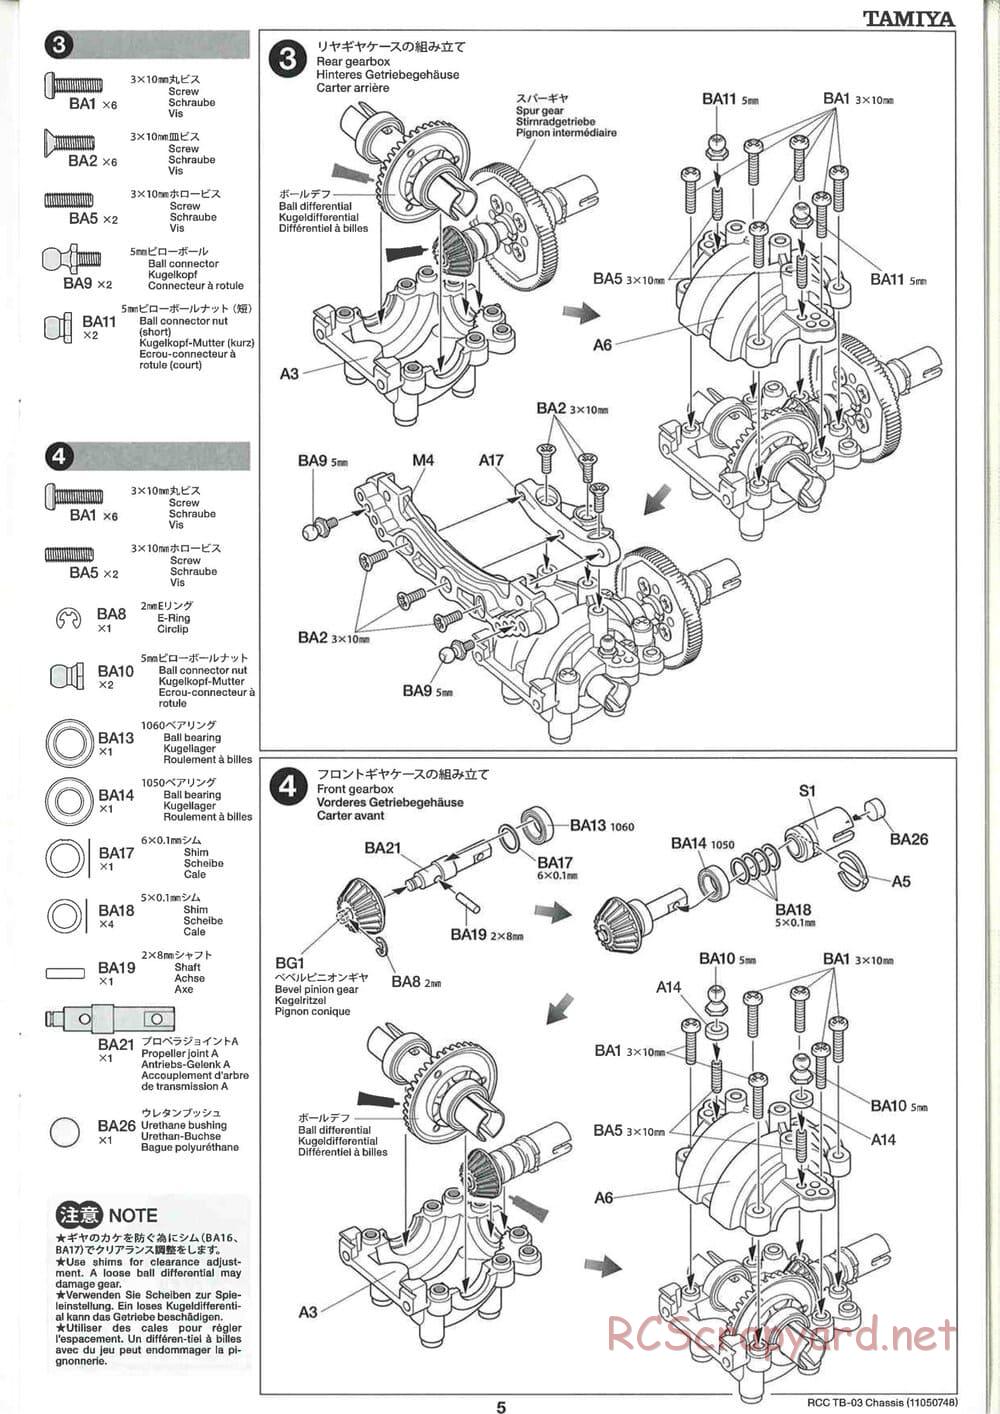 Tamiya - TB-03 Chassis - Manual - Page 5